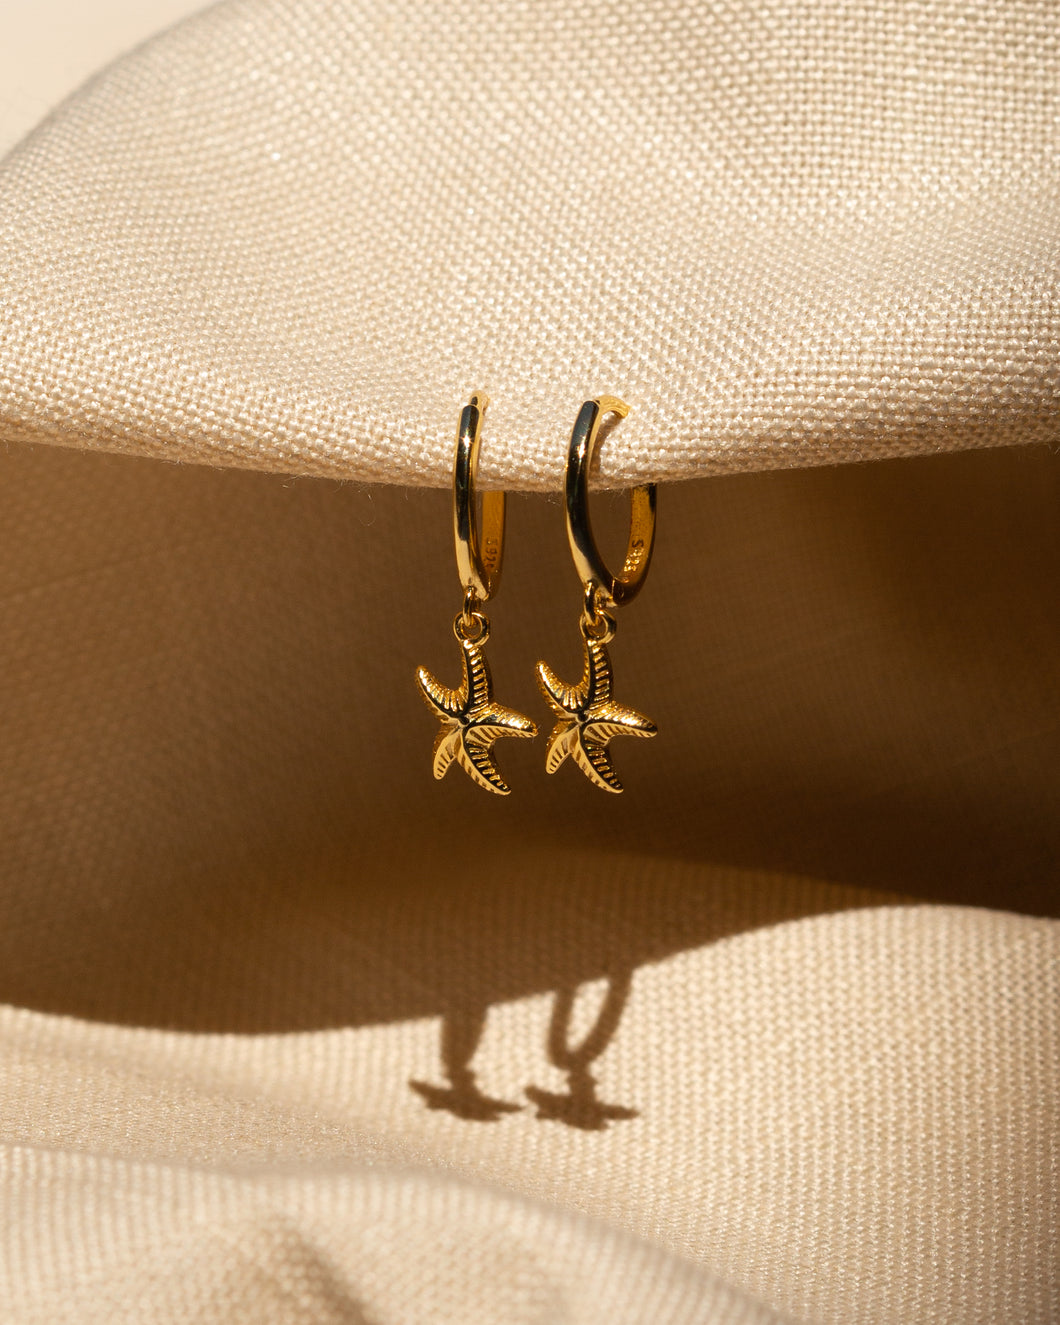 Starfish Huggie Earrings